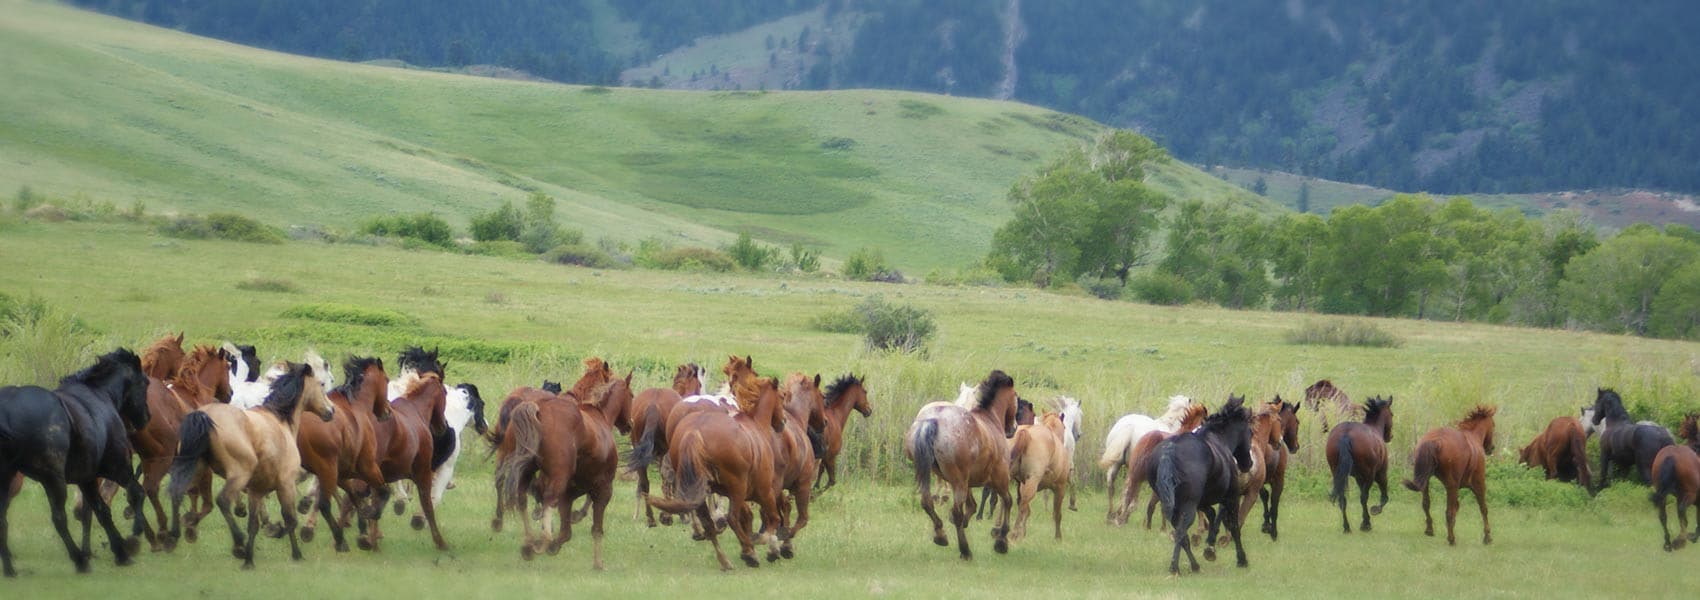 horses at Eatons' Ranch